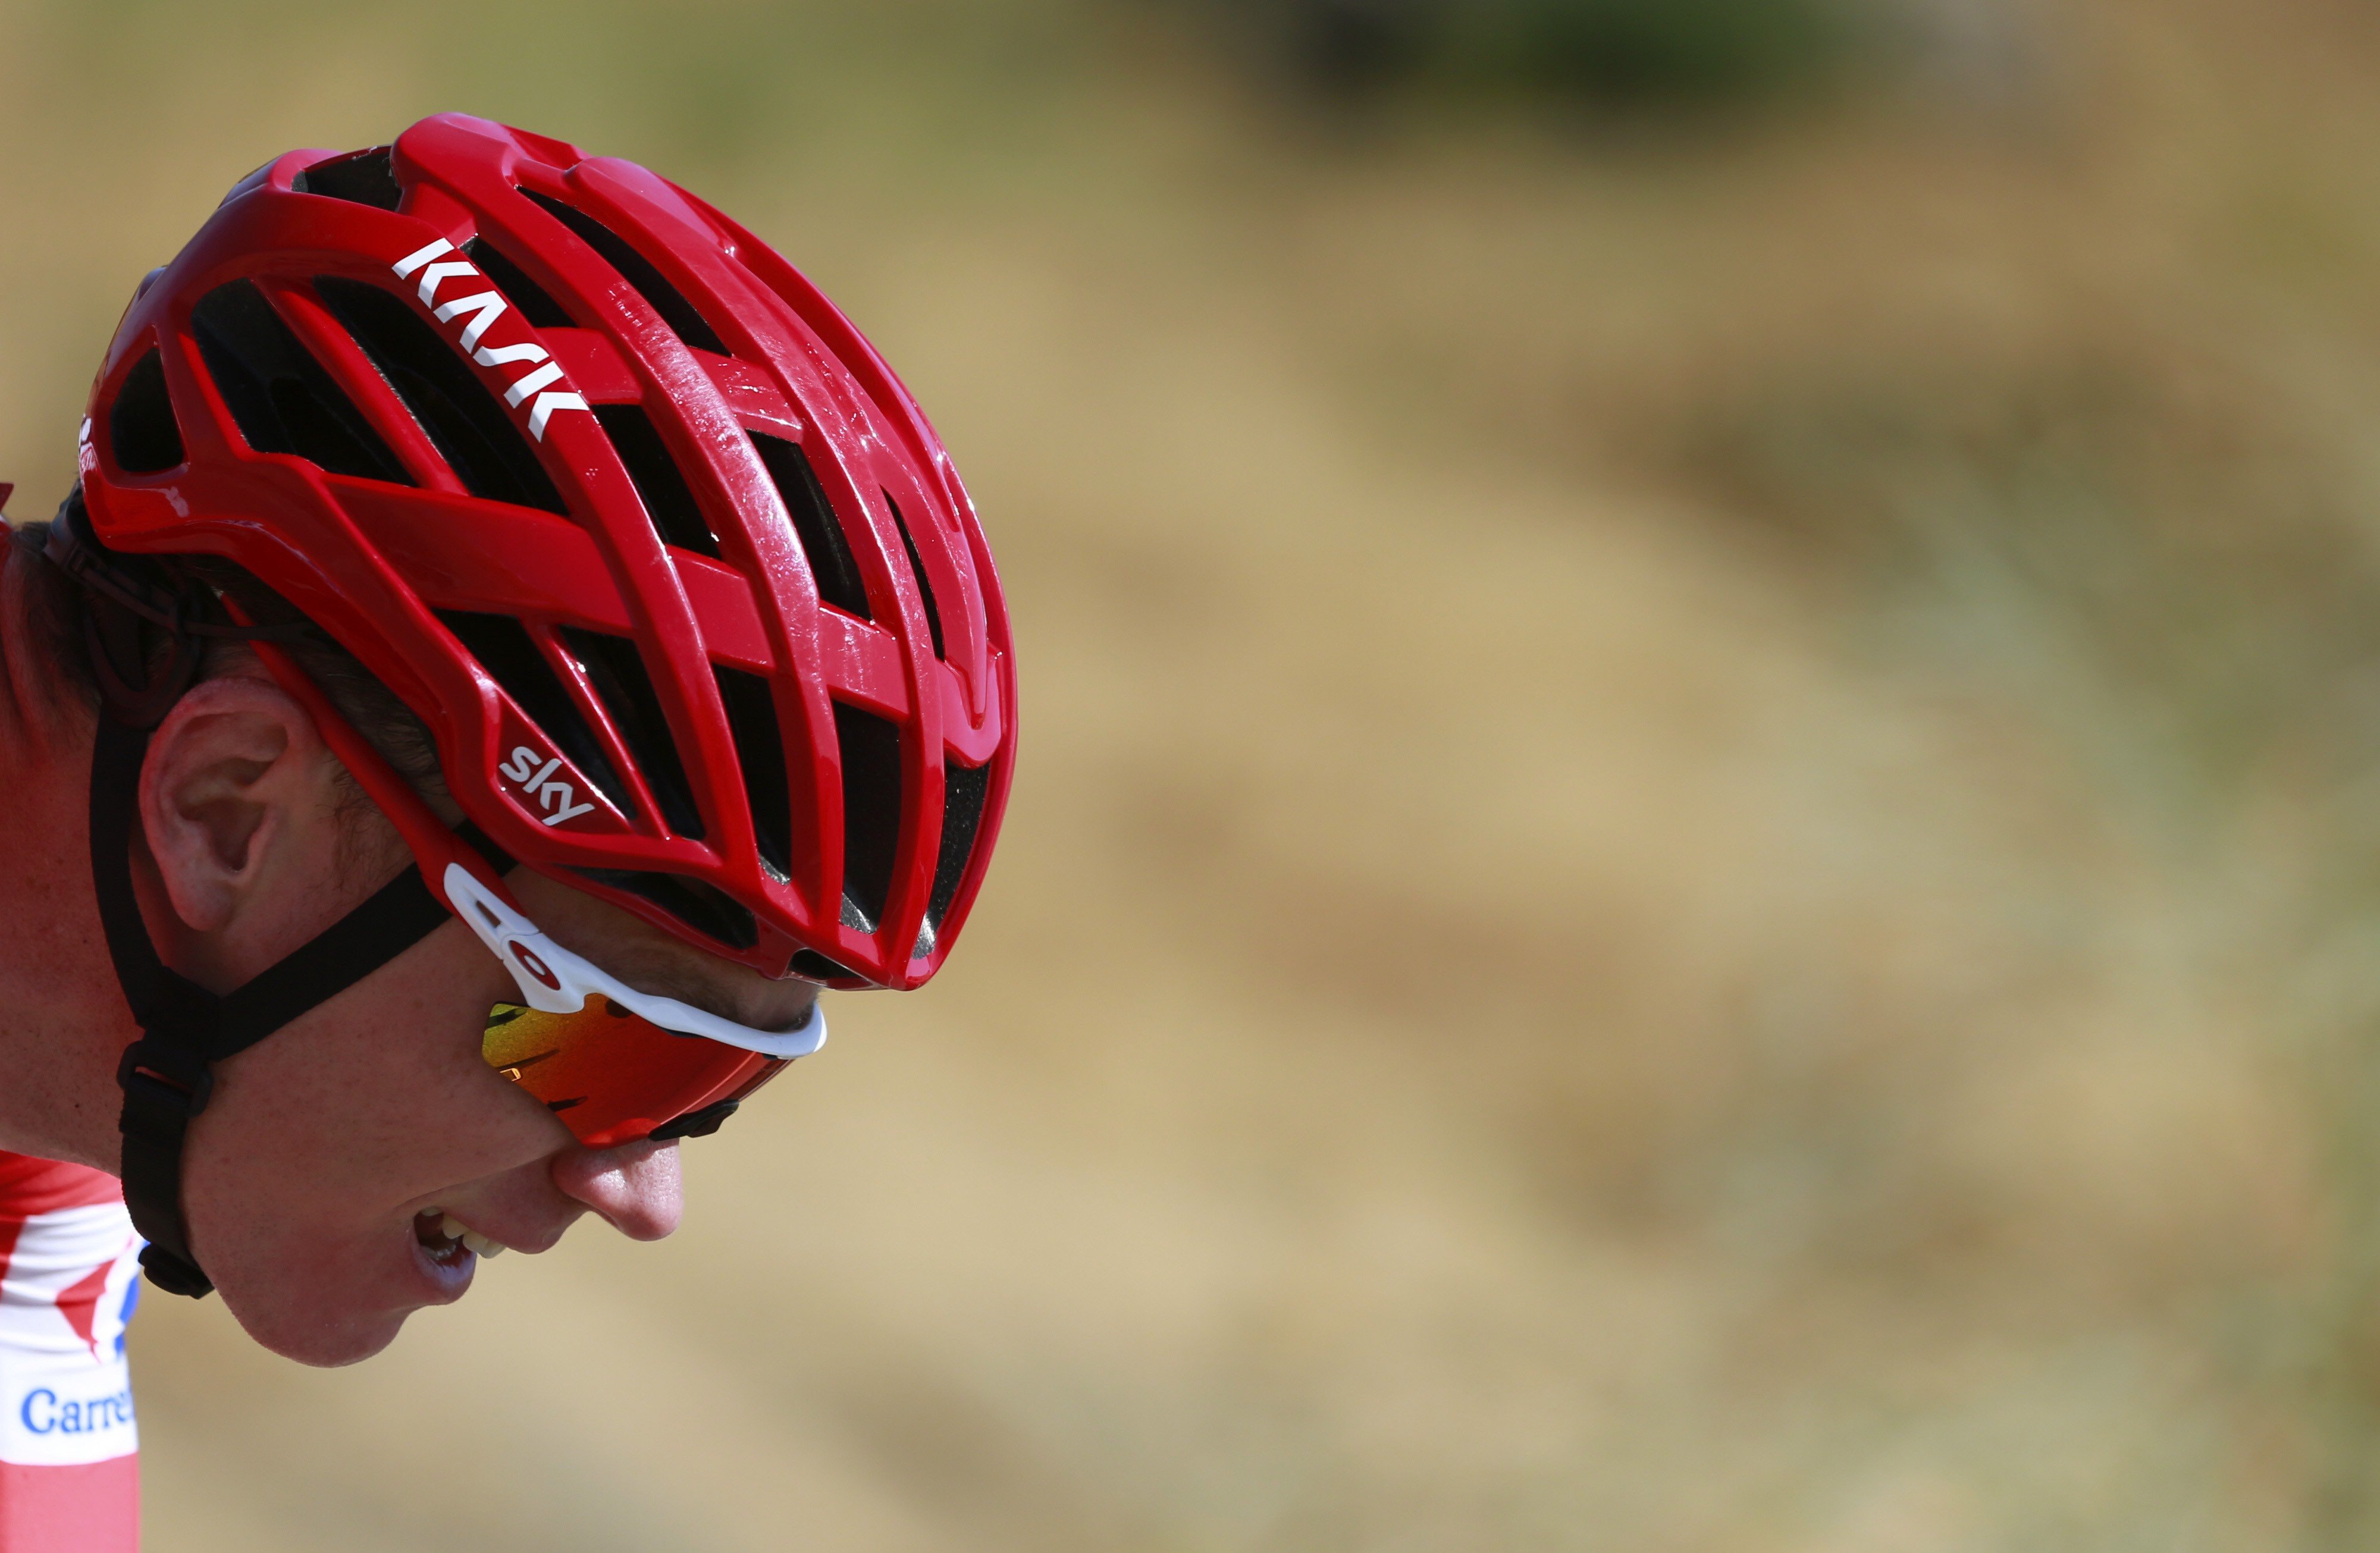 L'espanyol Juanjo Cobo perd la Vuelta del 2011 per dopatge i el títol serà per a Froome